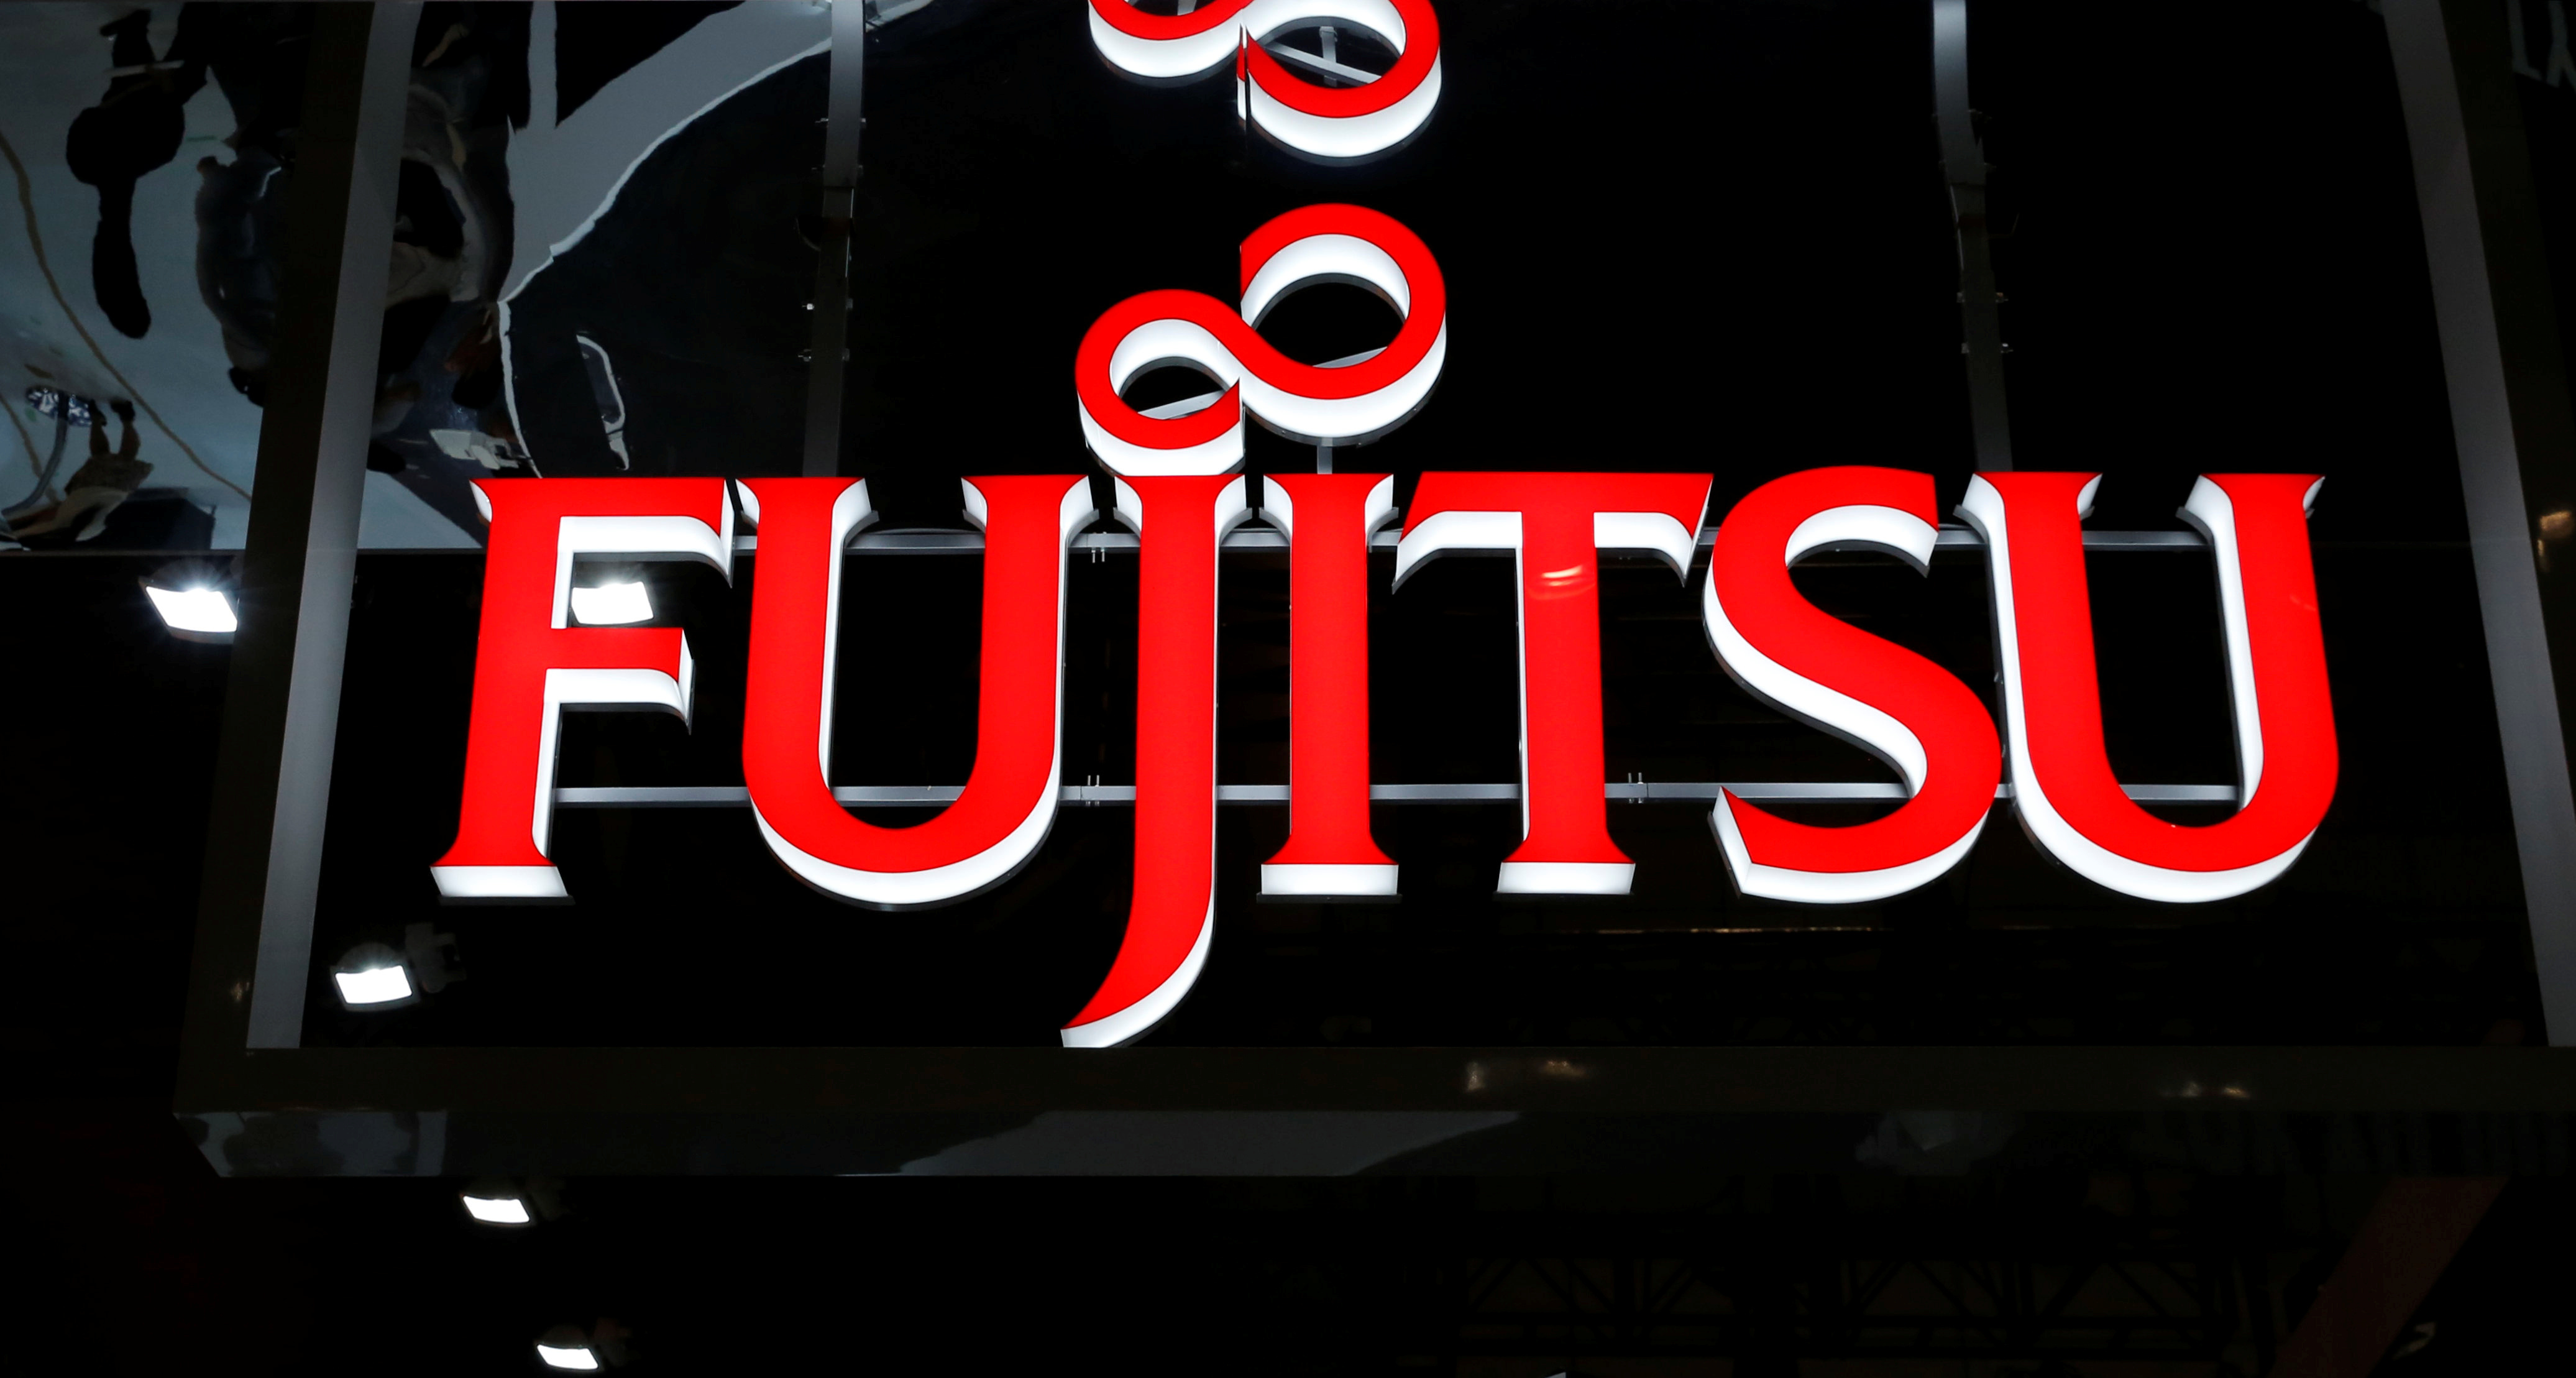 Fujitsu lance une vente aux enchères pour son activité de climatisation - sources | Reuters